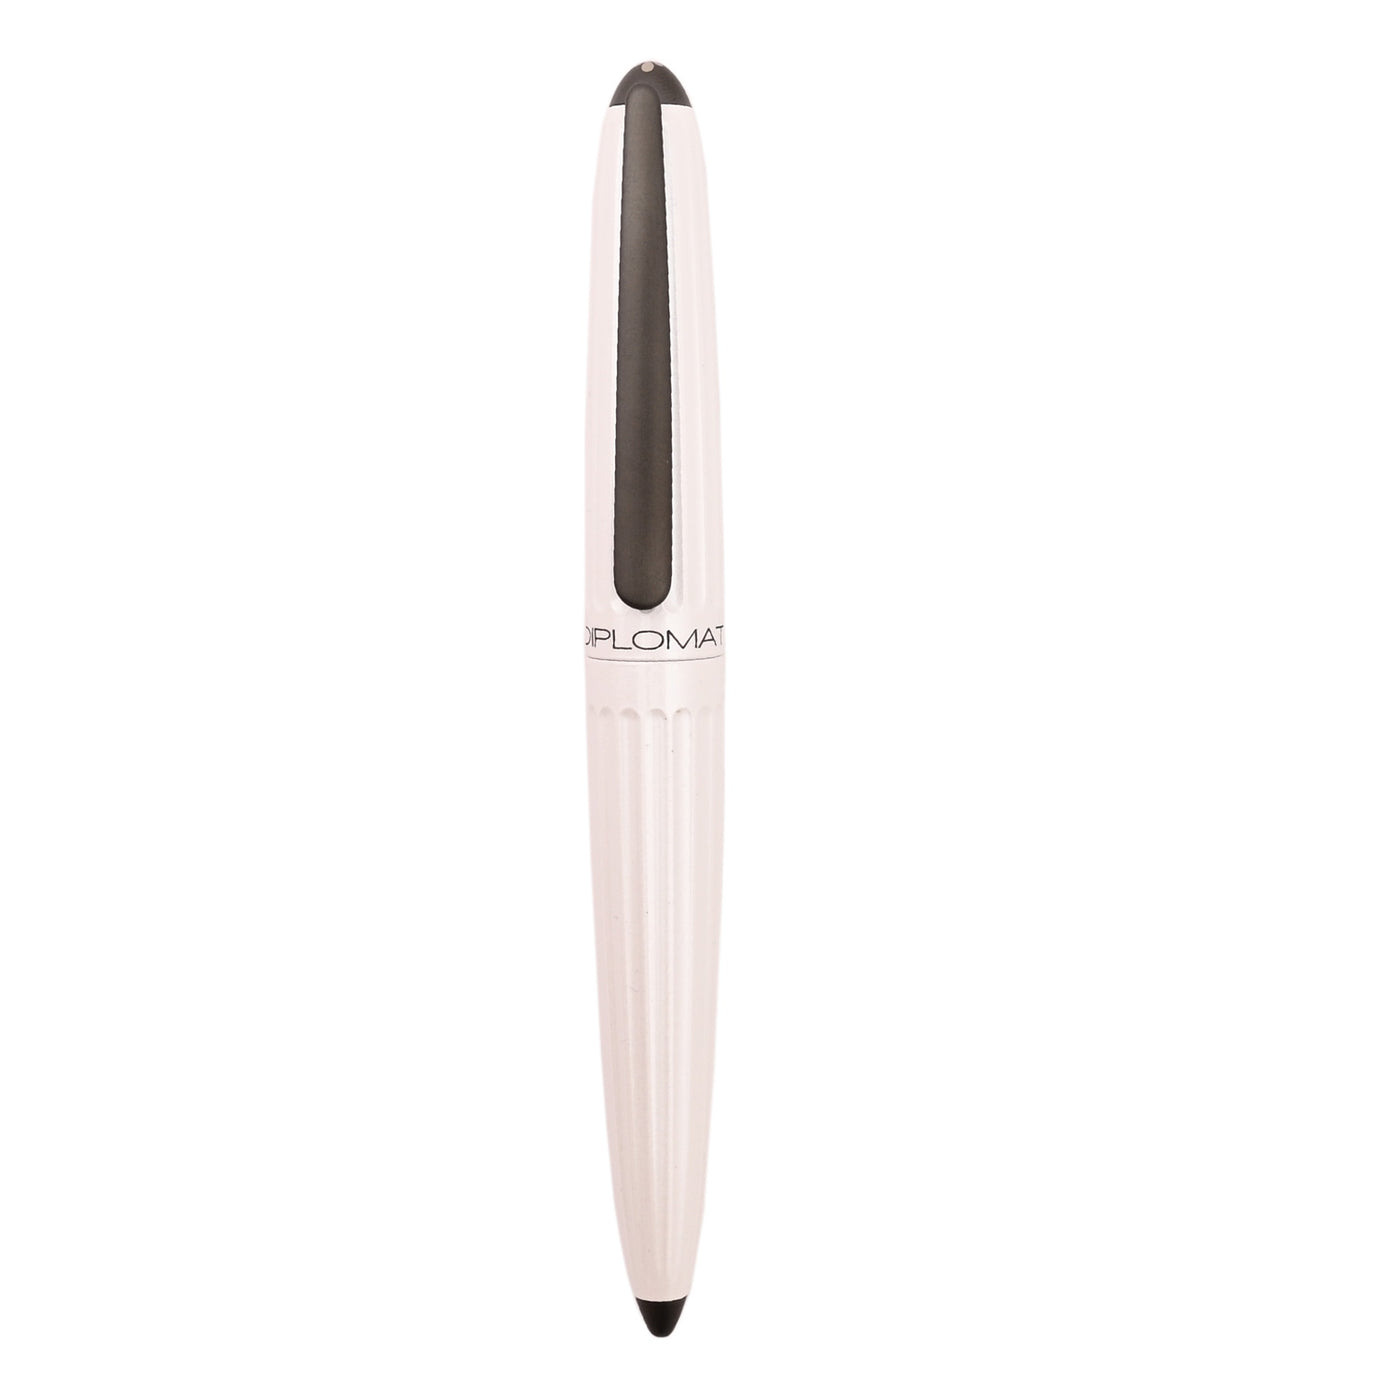 Diplomat Aero Fountain Pen - Pearly White 5